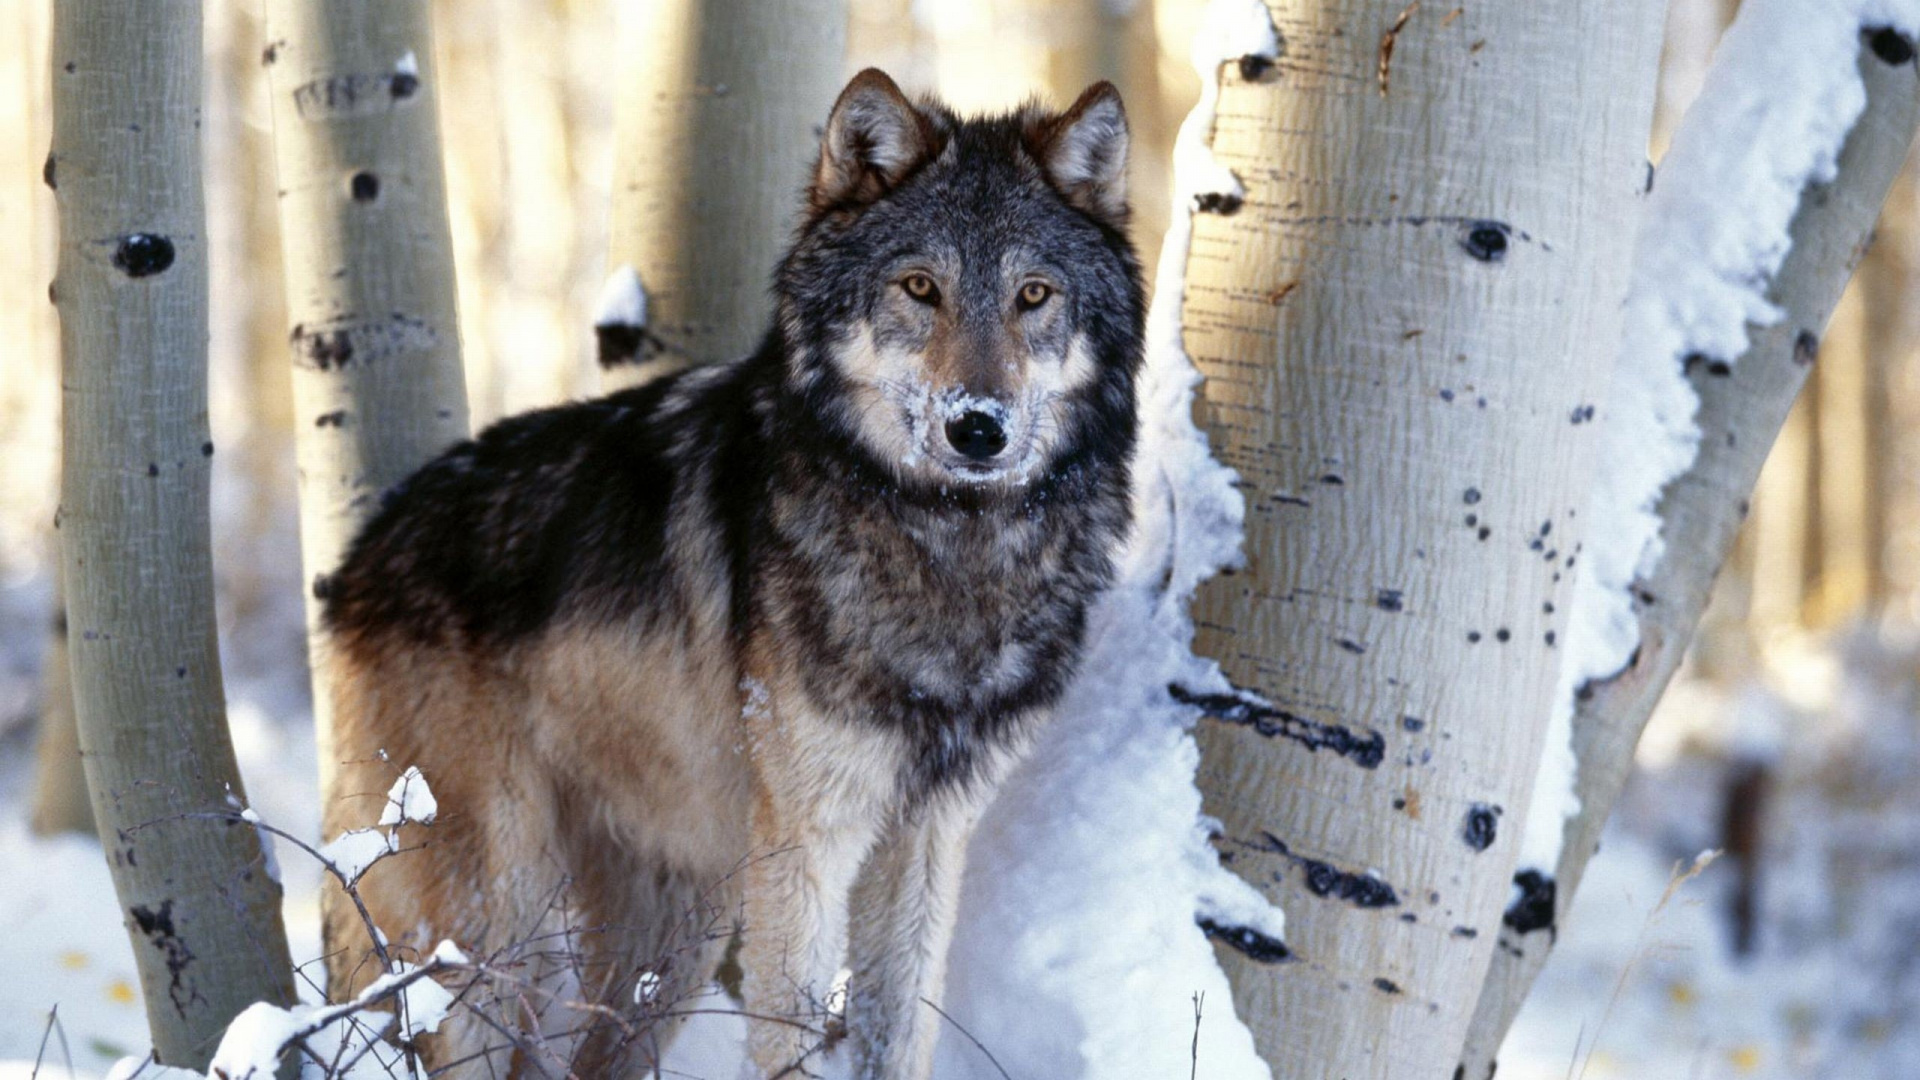 野生动物, 那只狼狗, 树木, 动植物, 土狼 壁纸 1920x1080 允许